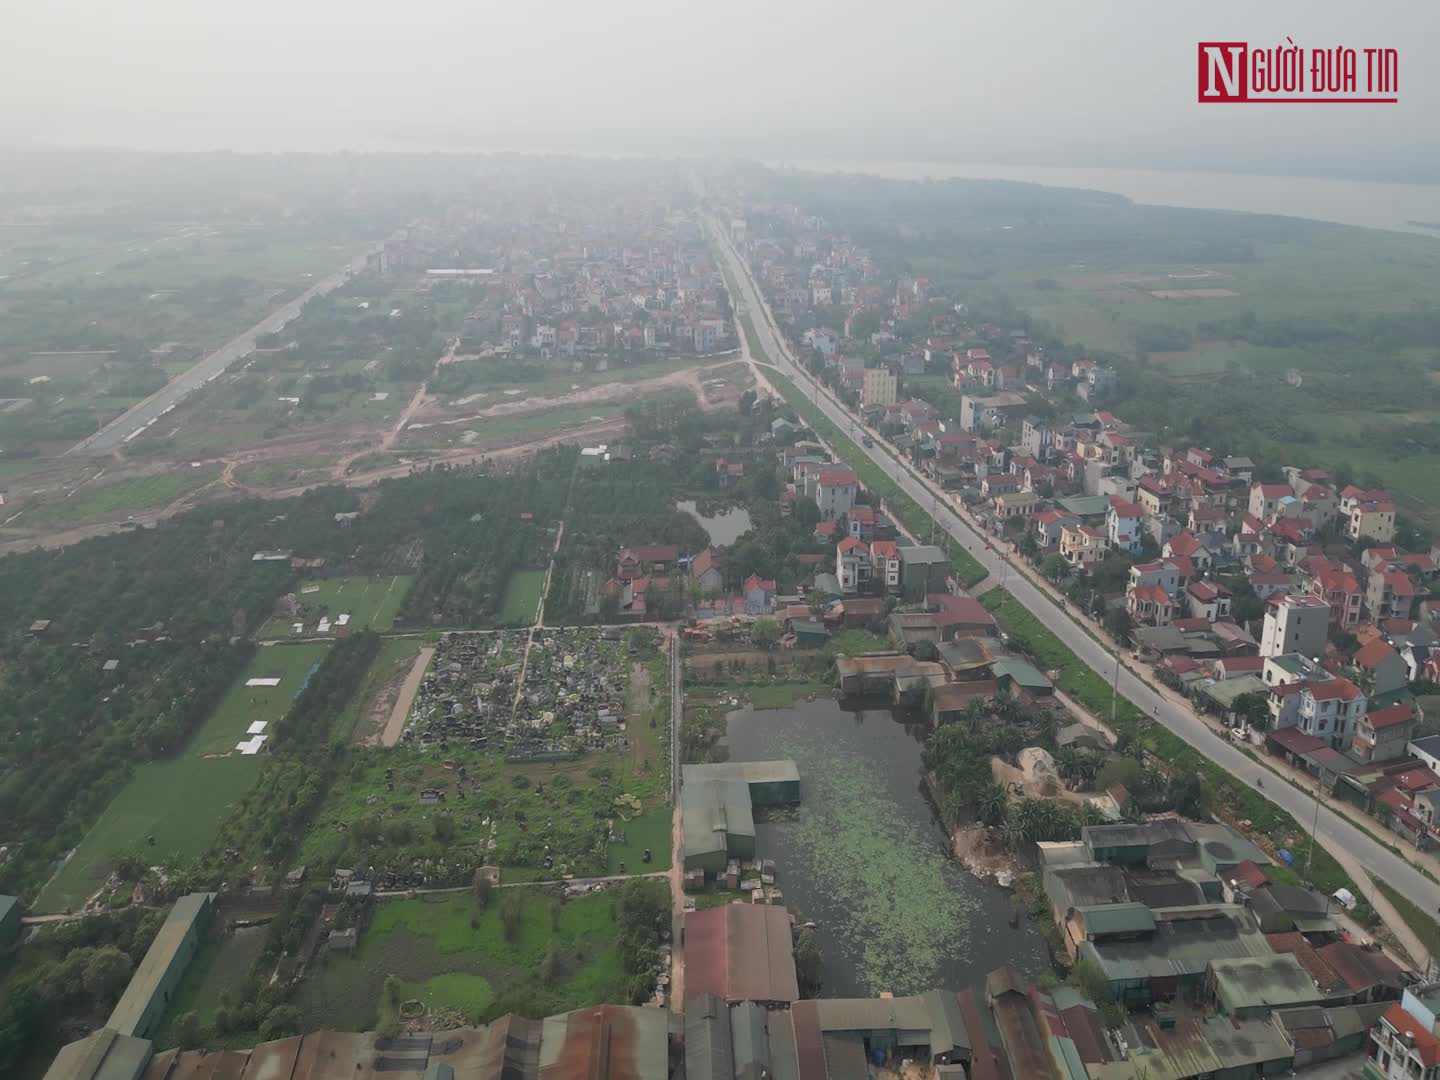 Bất động sản - Hà Nội: Khu vực xây cầu Hồng Hà trị giá gần 10.000 tỷ đồng